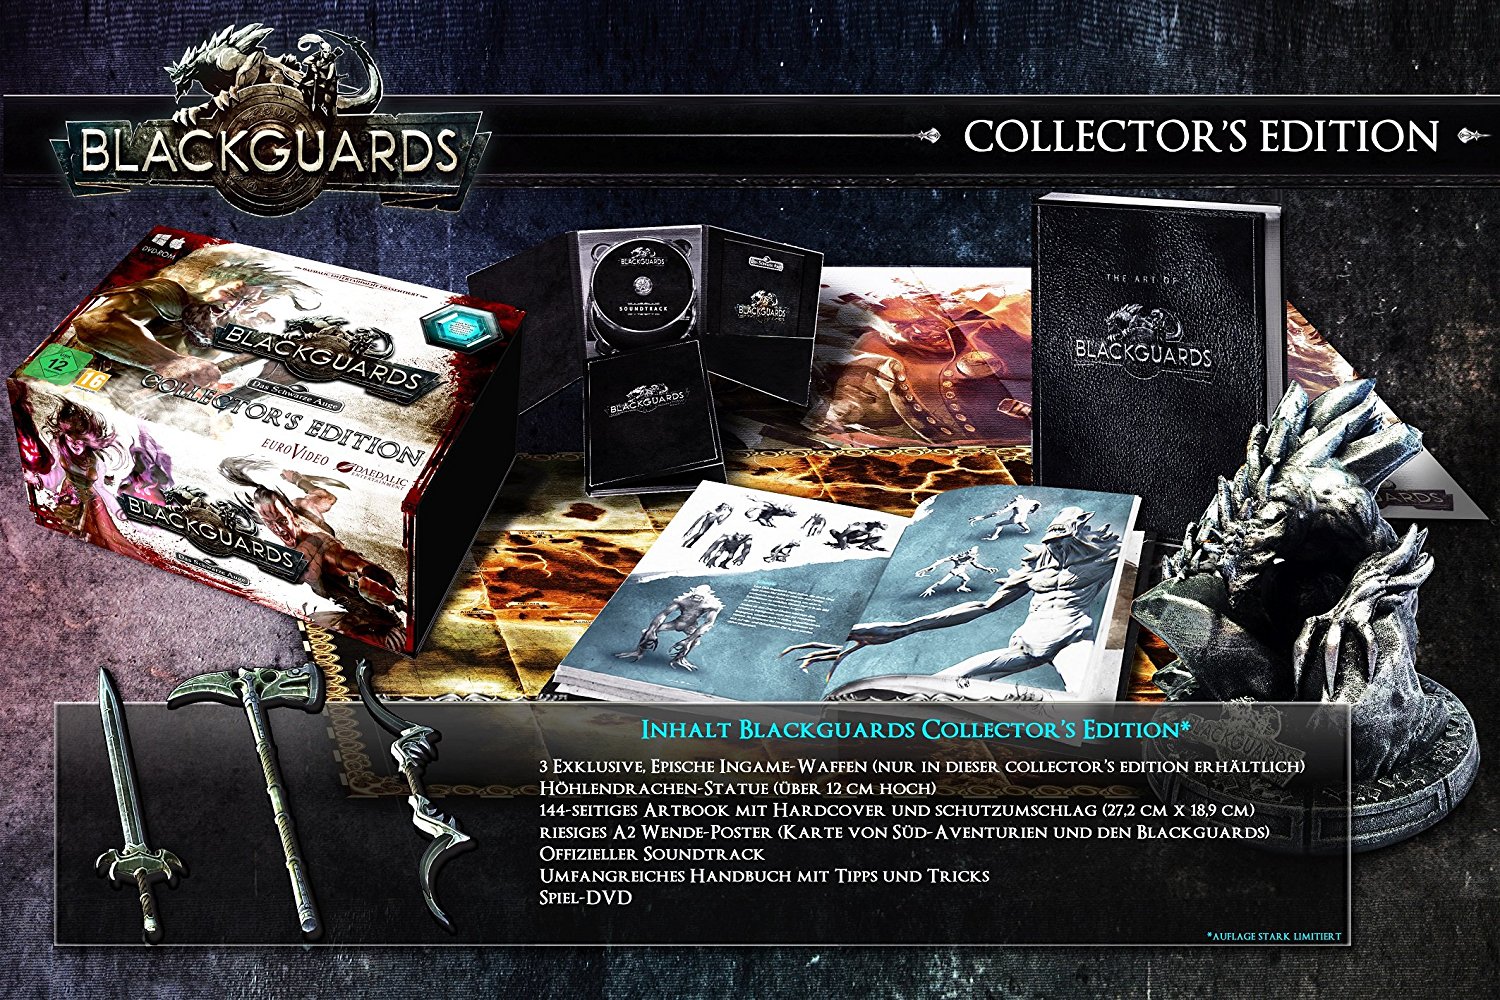 Das Schwarze Auge: Blackguards Cover und Inhalt der Collectors Edition